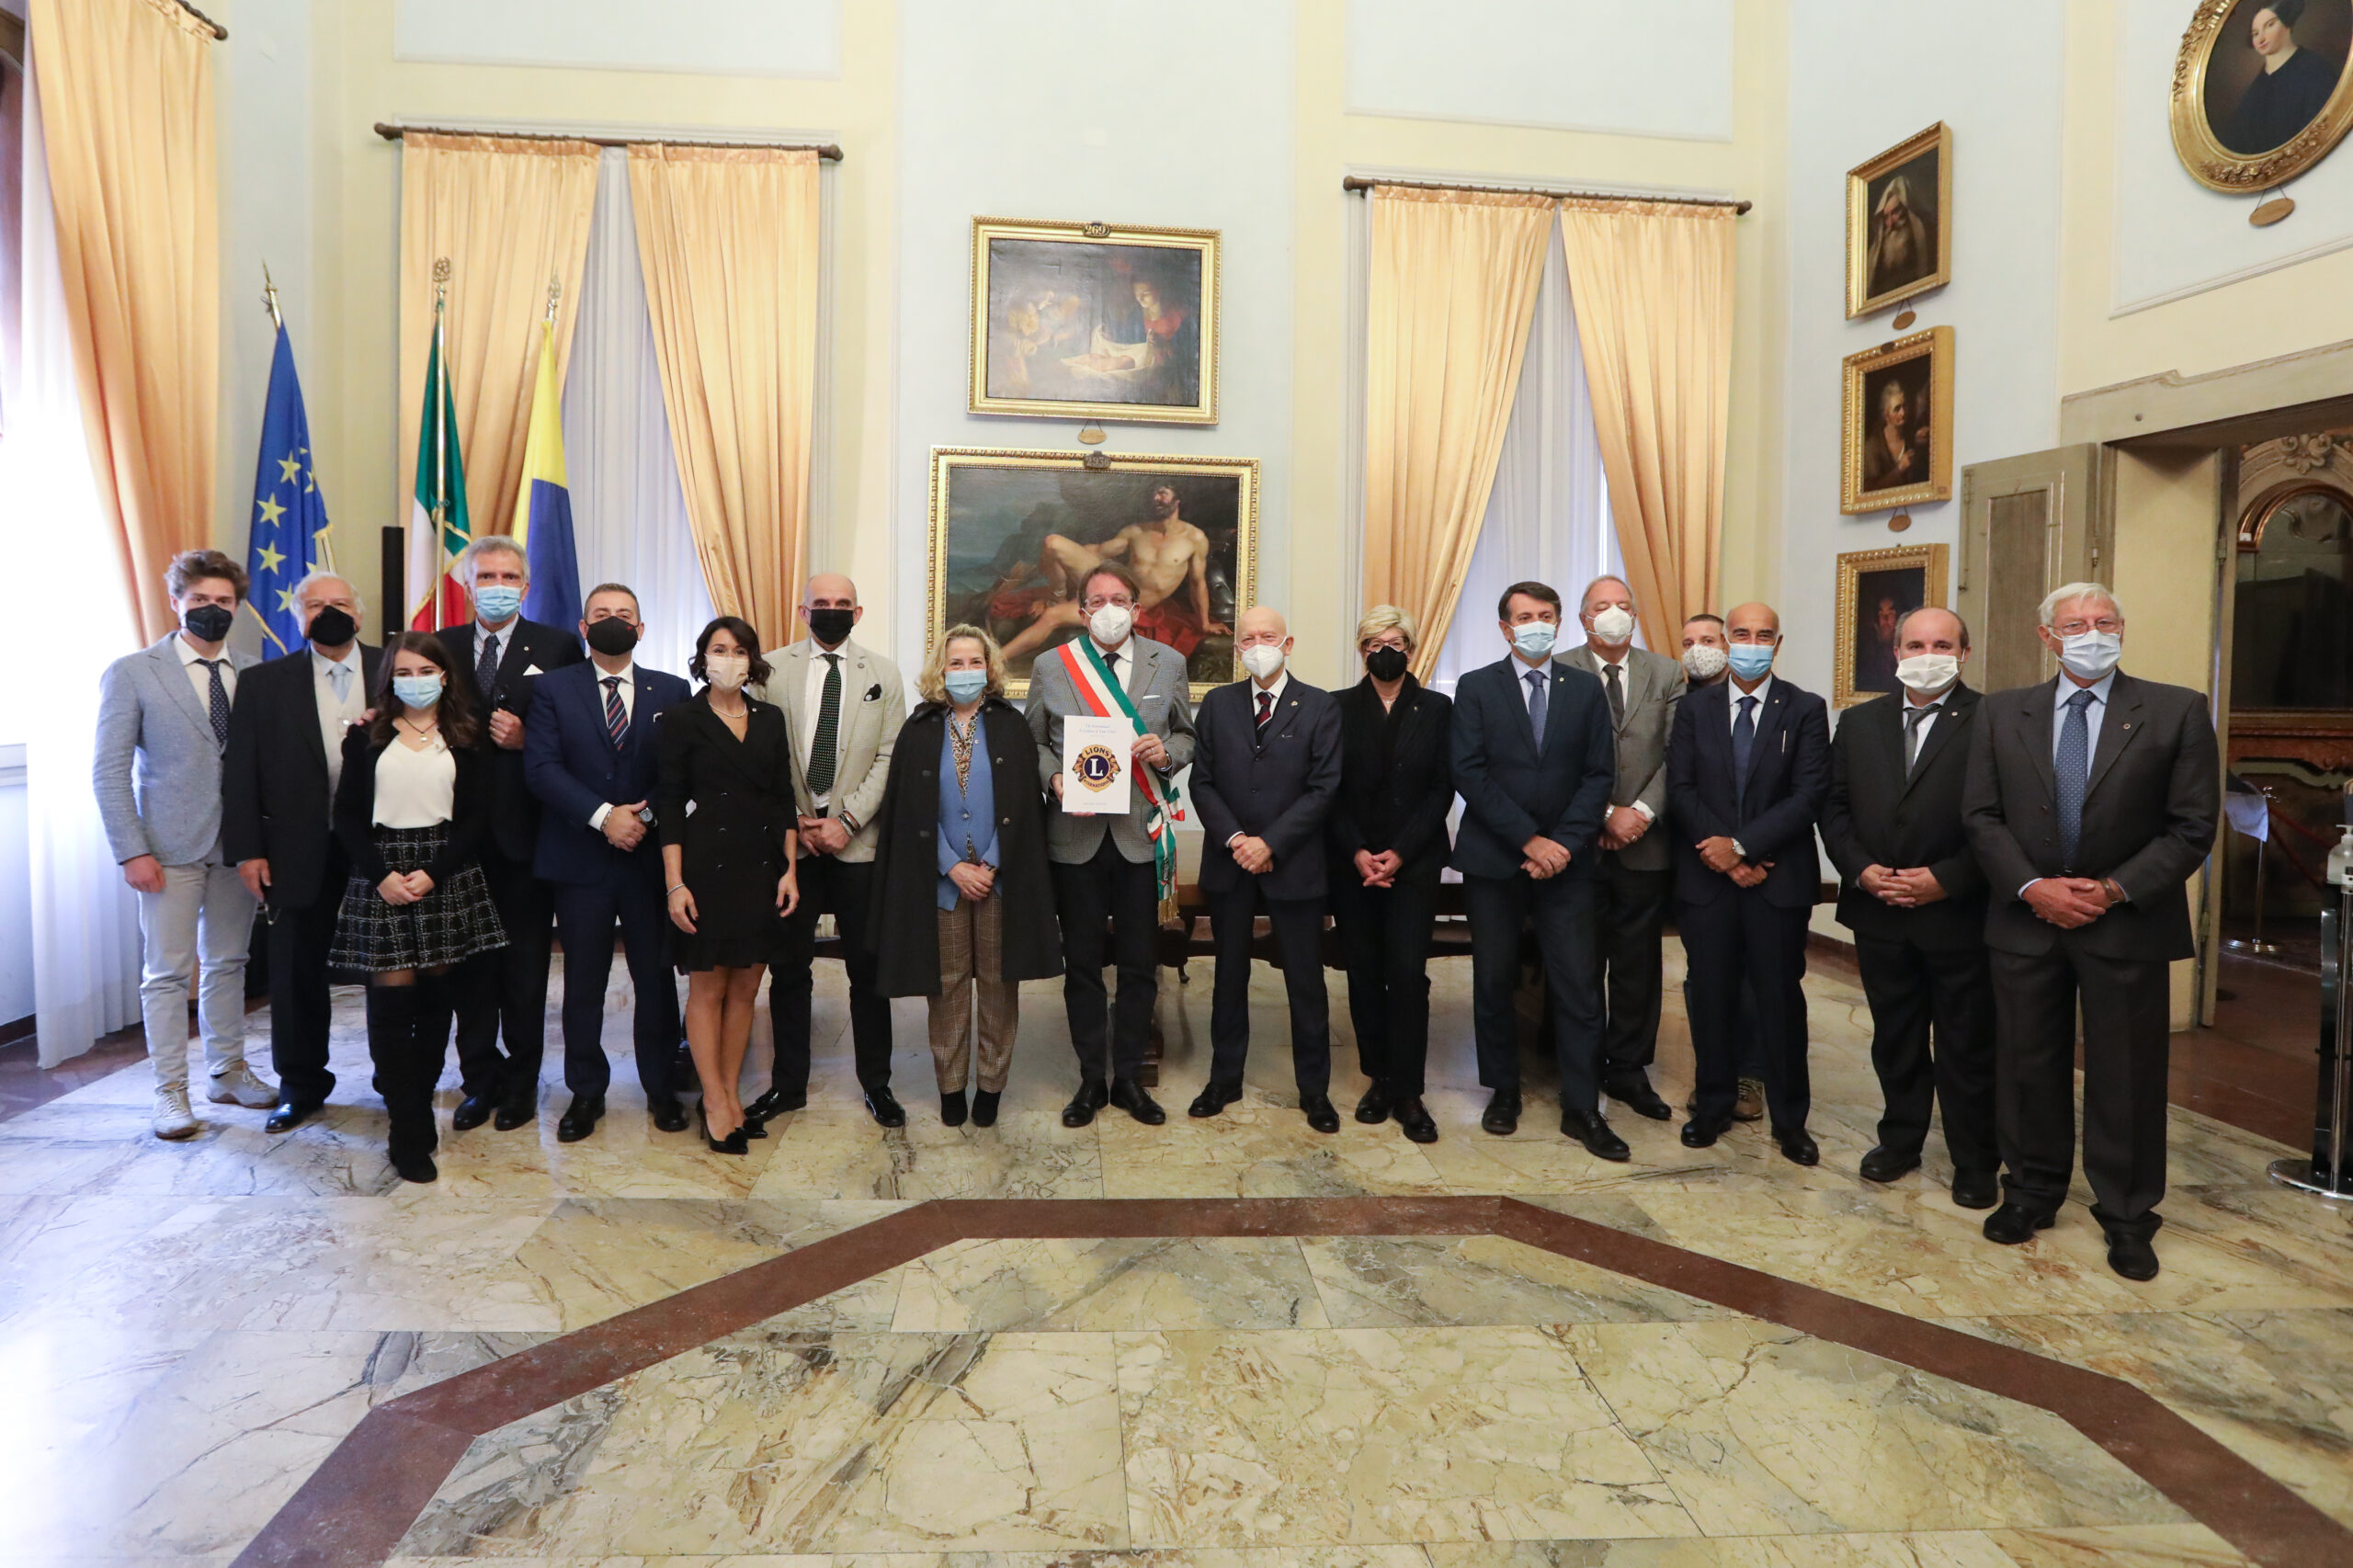  In Municipio i nuovi presidenti Lions di Modena